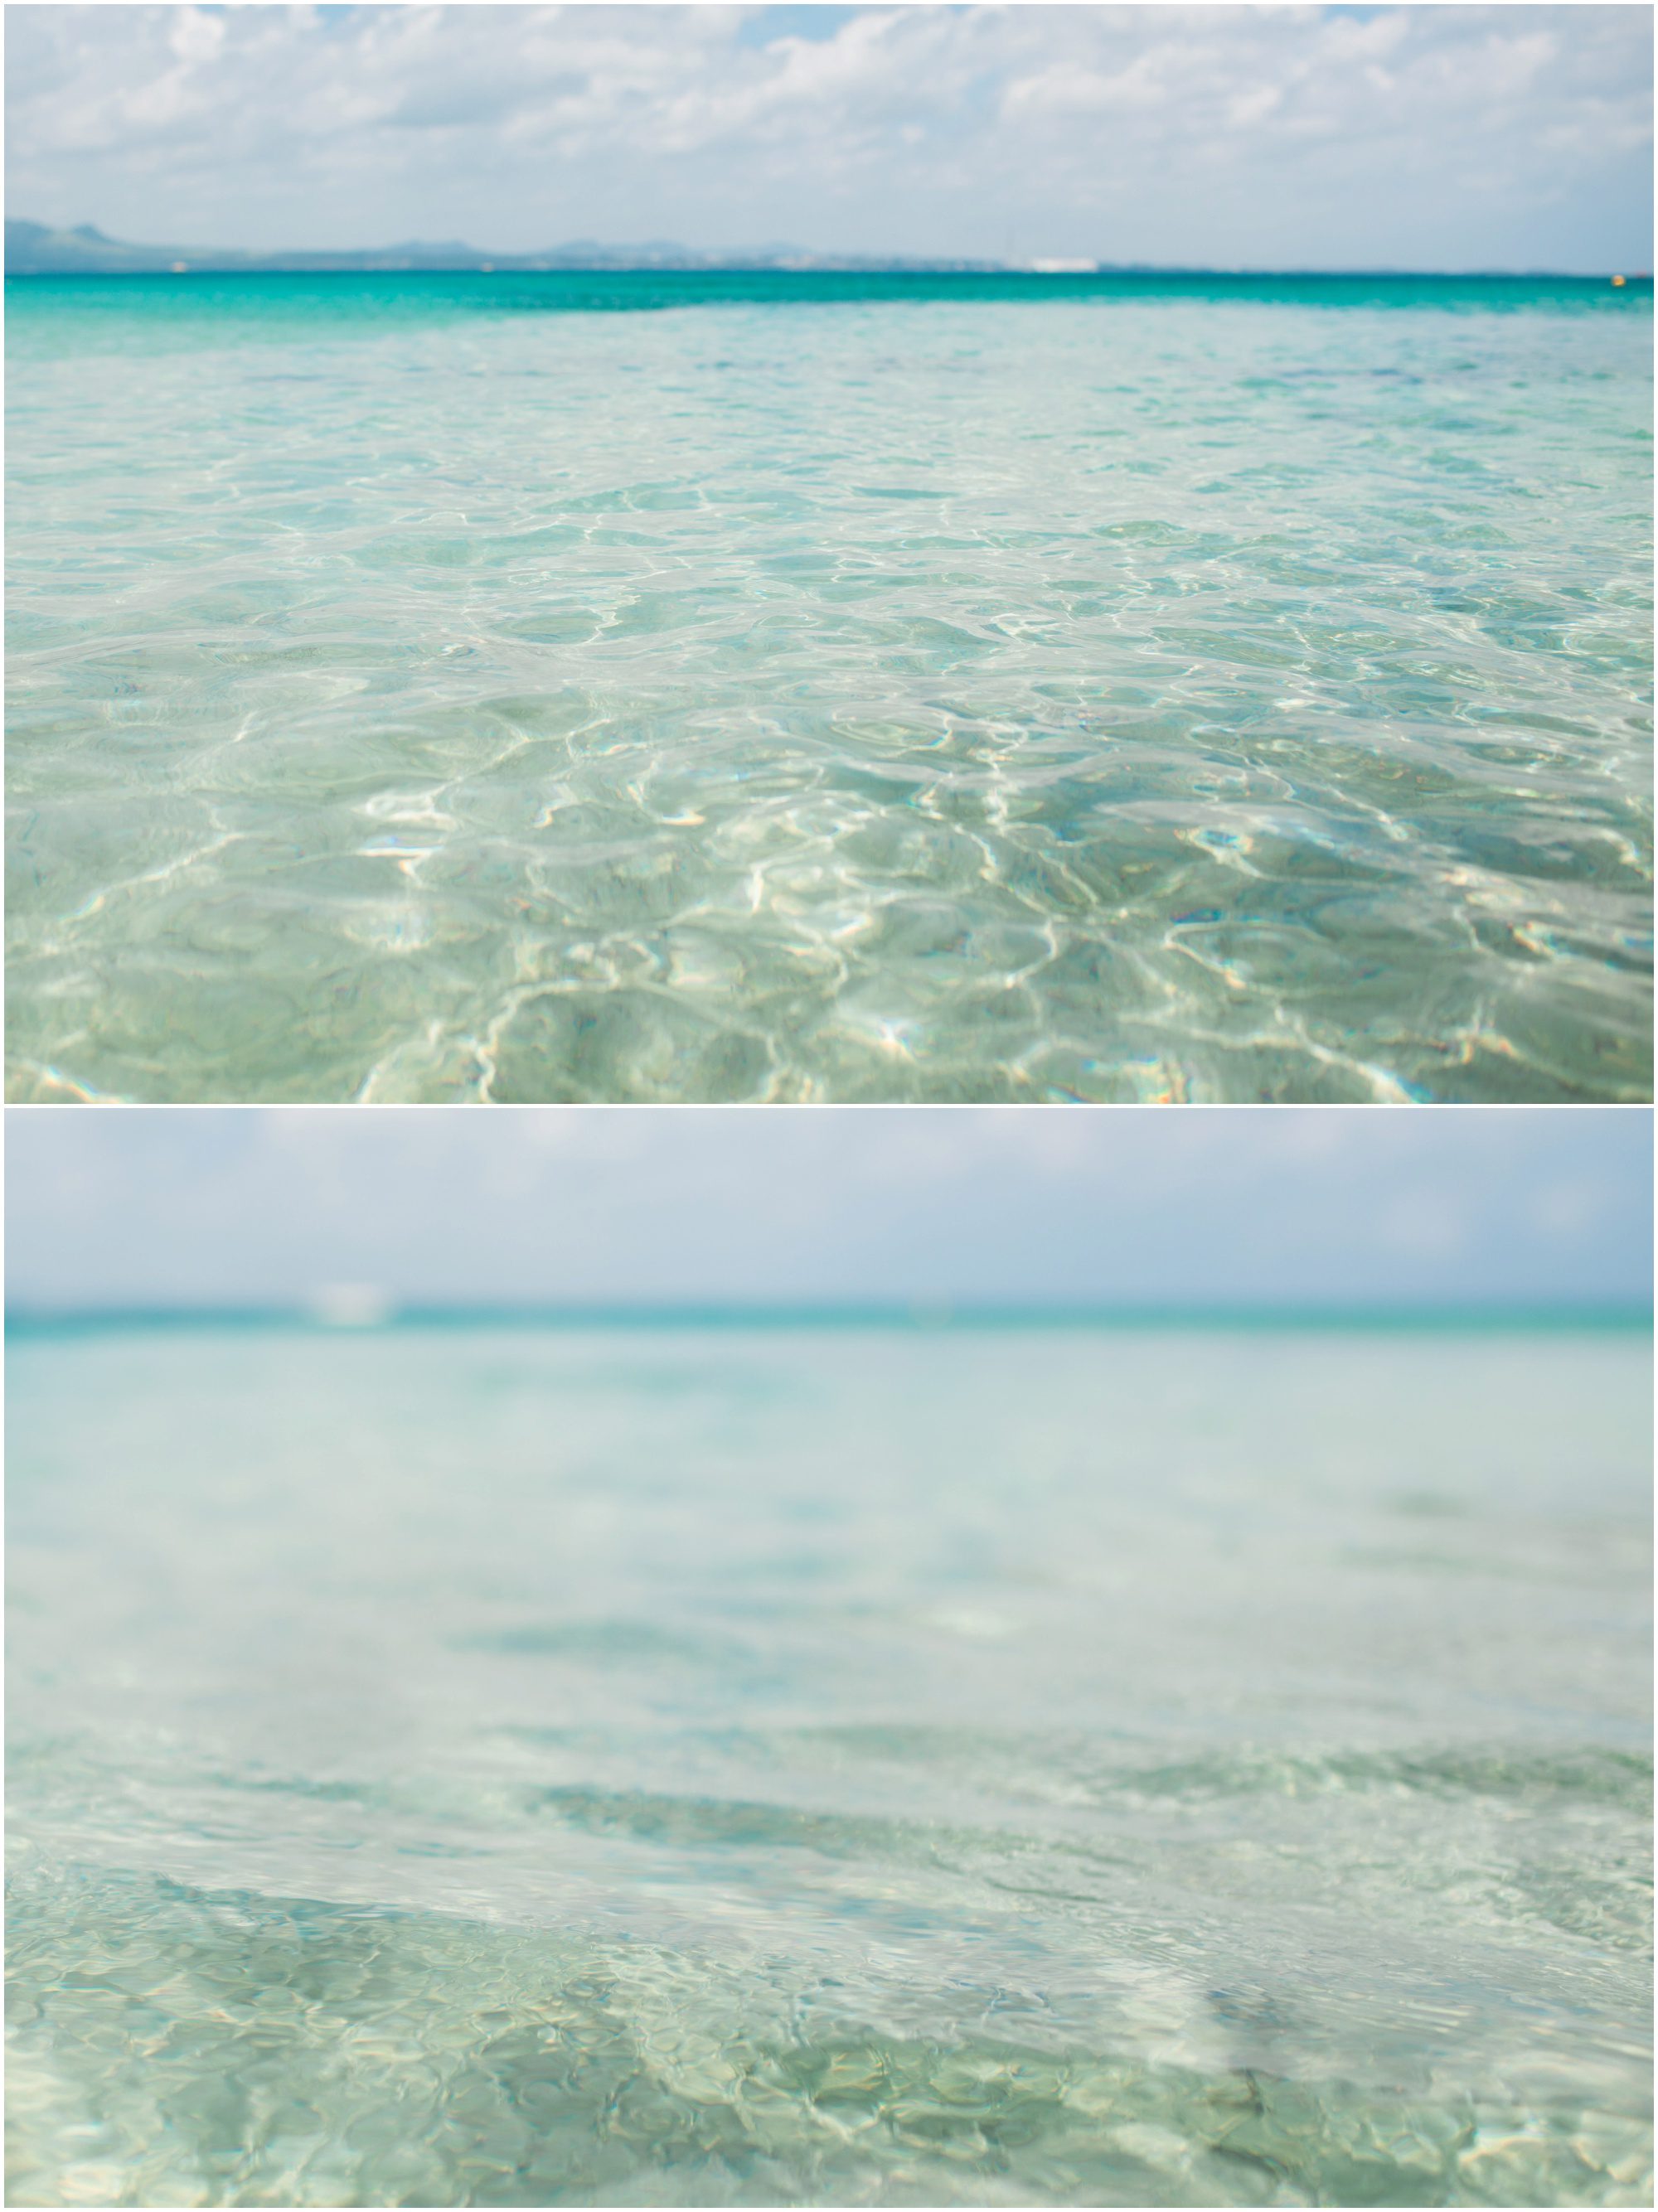 Okinawa beach water